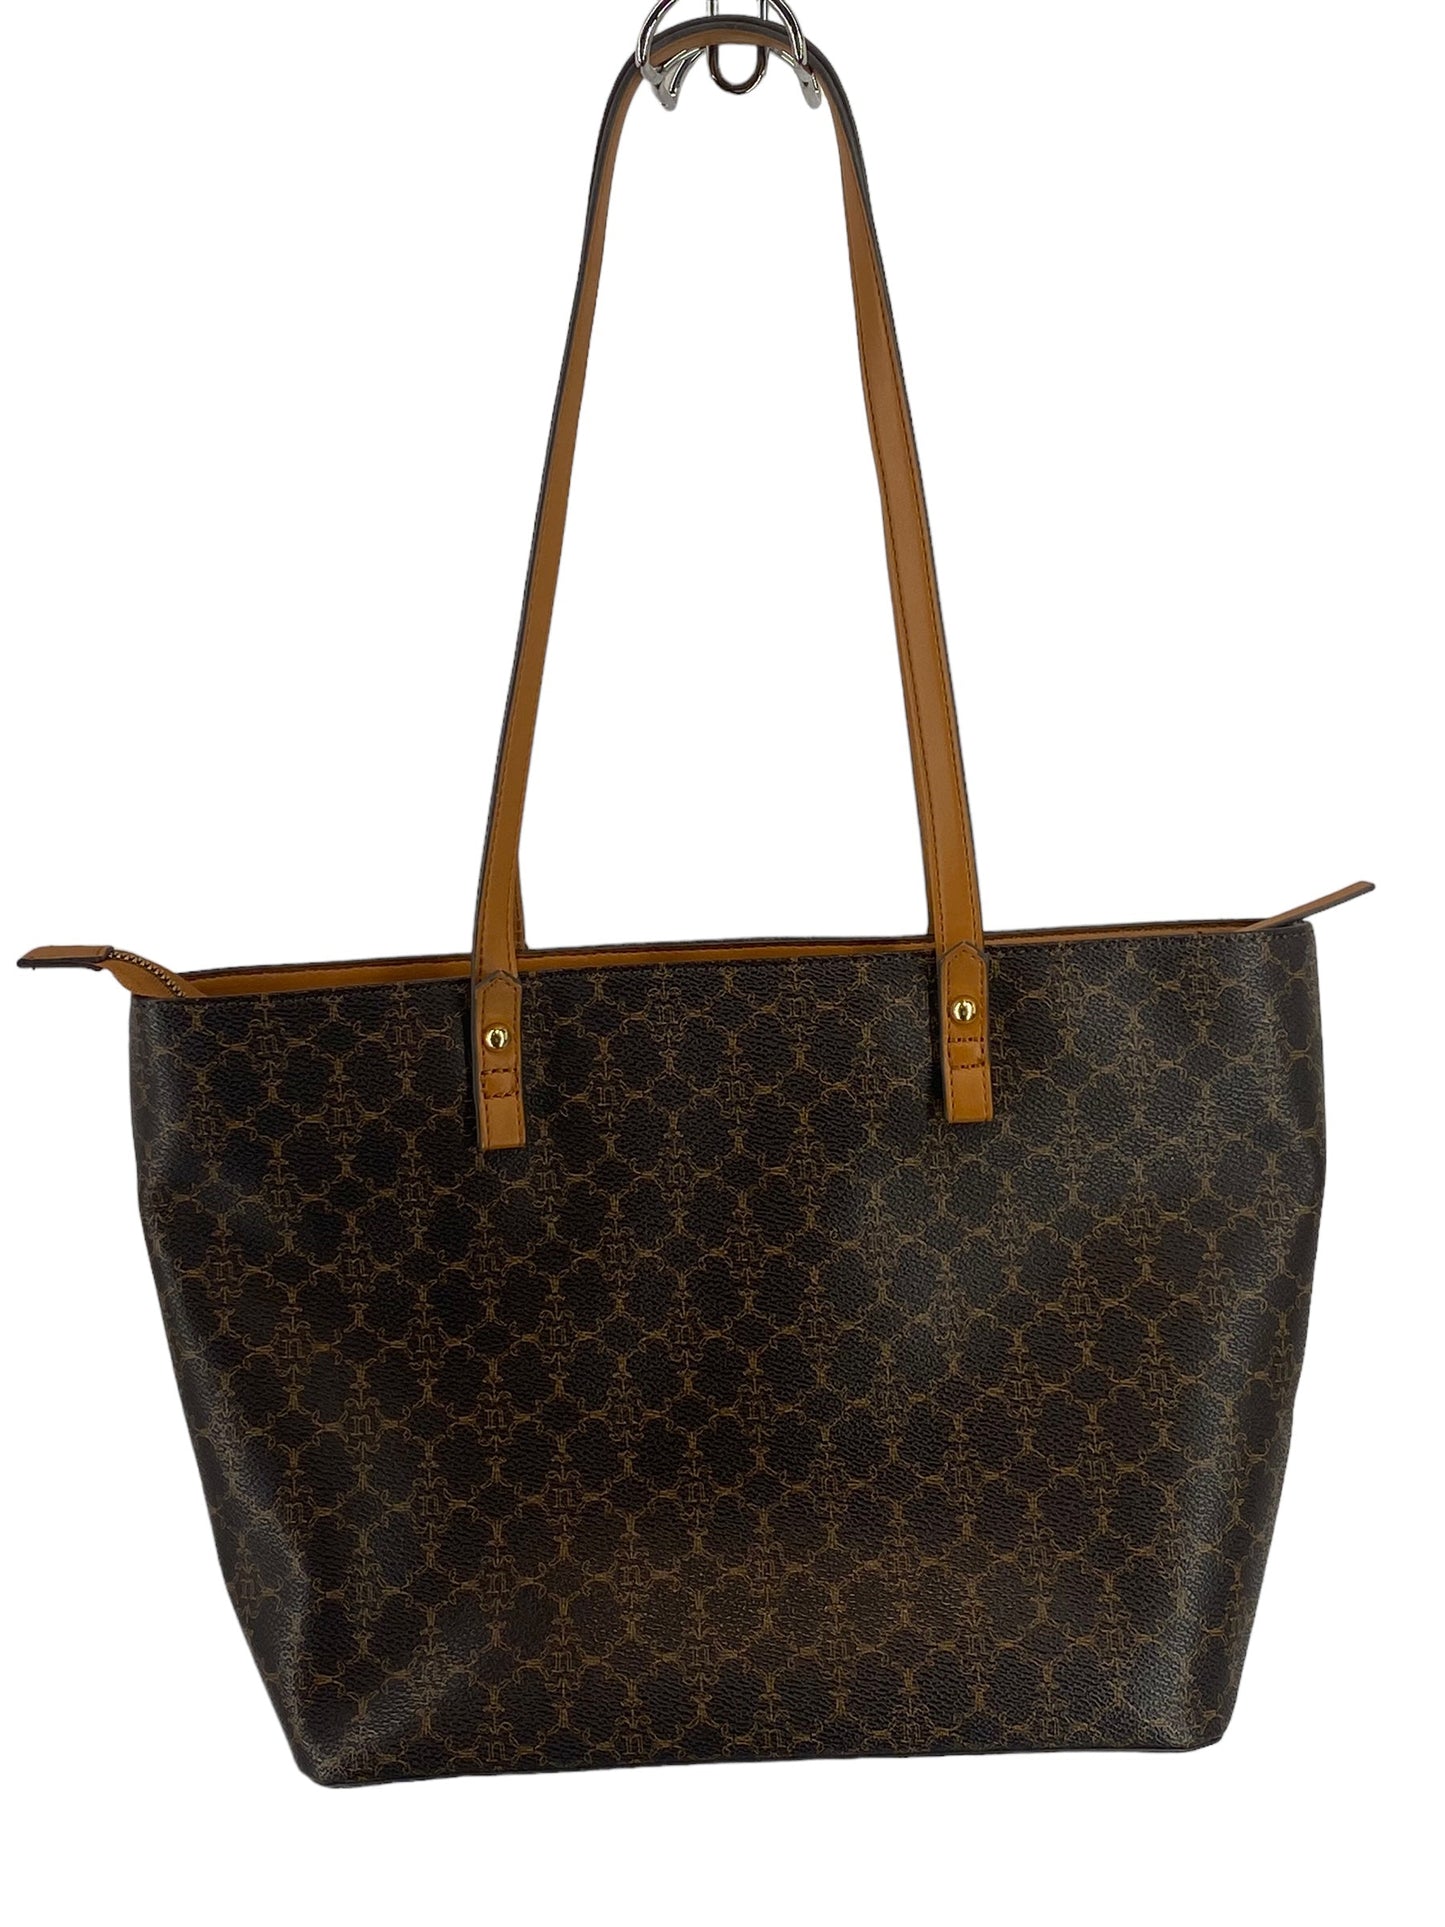 Handbag Designer By Nanette Lepore  Size: Large